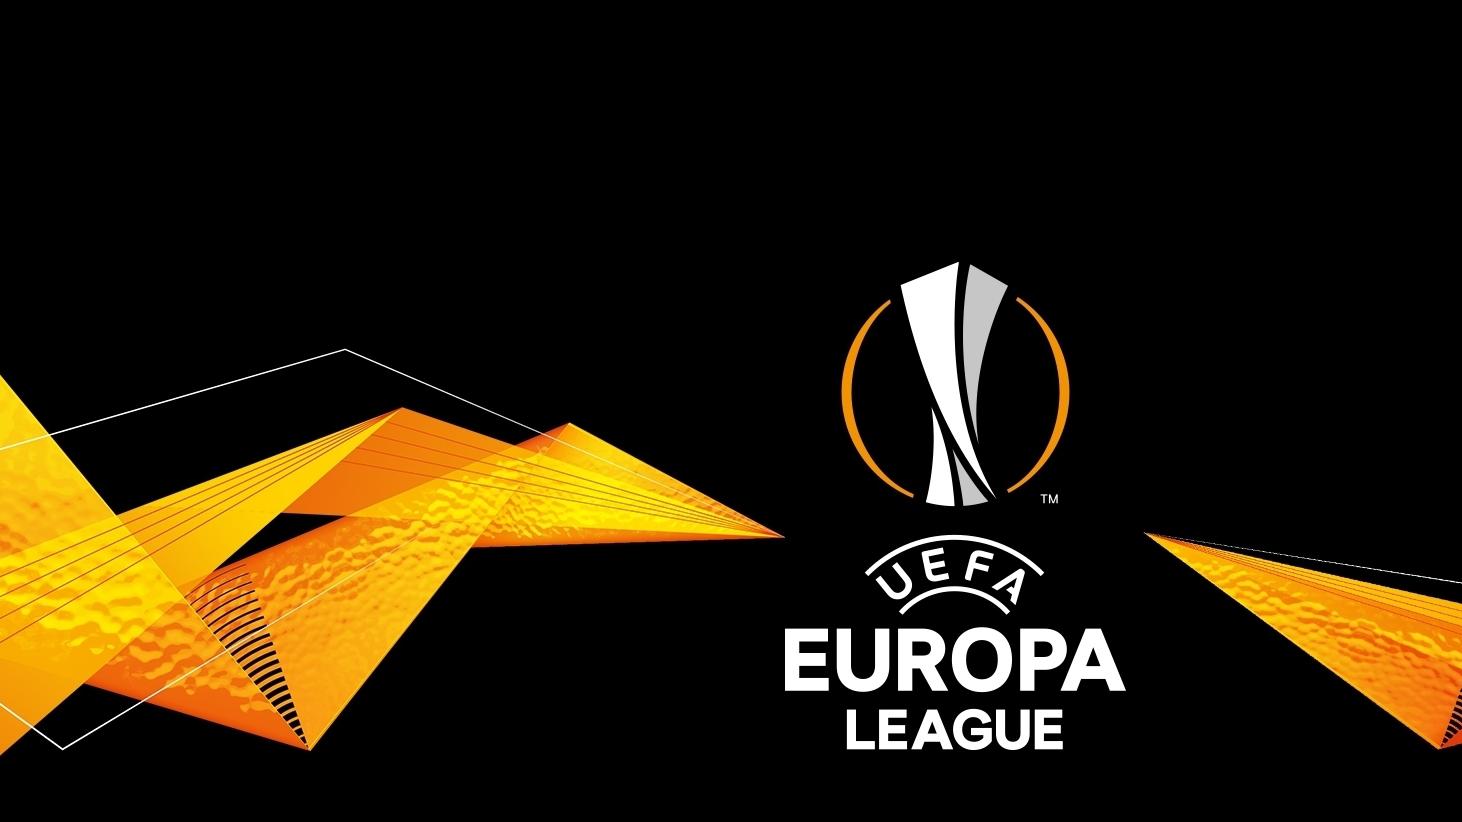 Duele interesante ditën e sotme në Europa League, në fushë zbresin edhe skuadrat e Conference